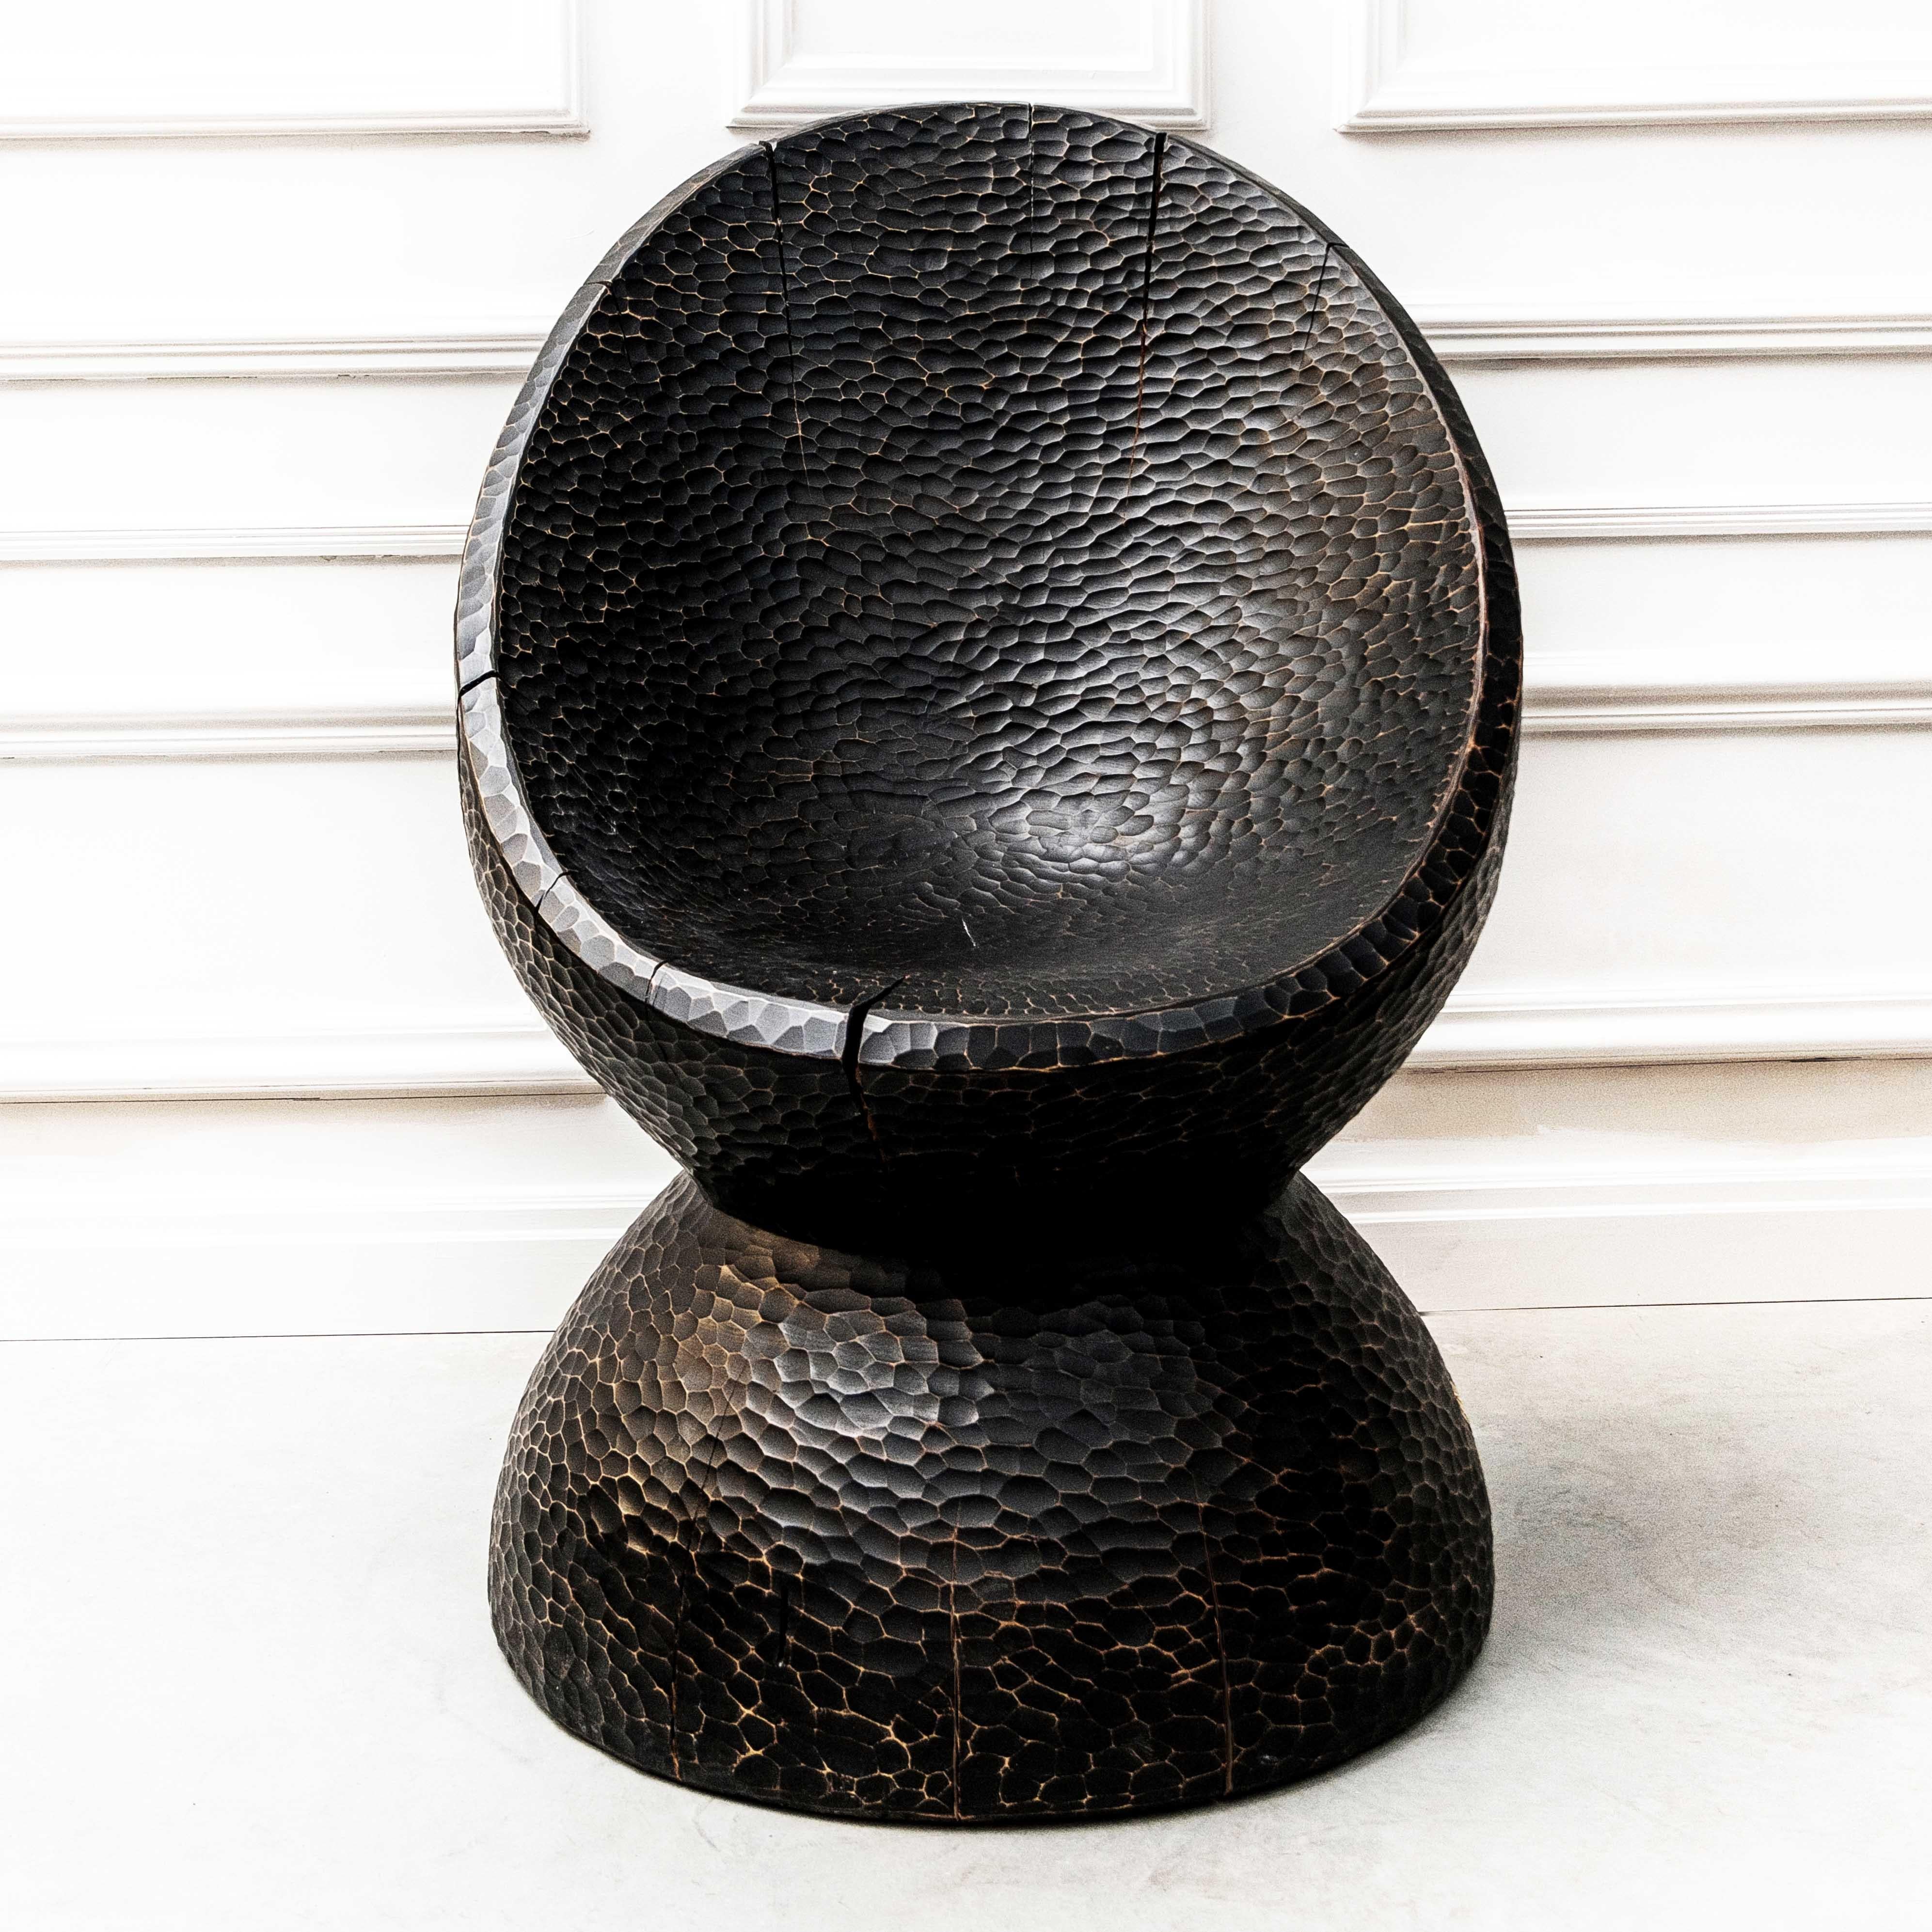 "MASSON" Sculptural Chair 38" x 26" x 26" inch by Grigorii Gorkovenko